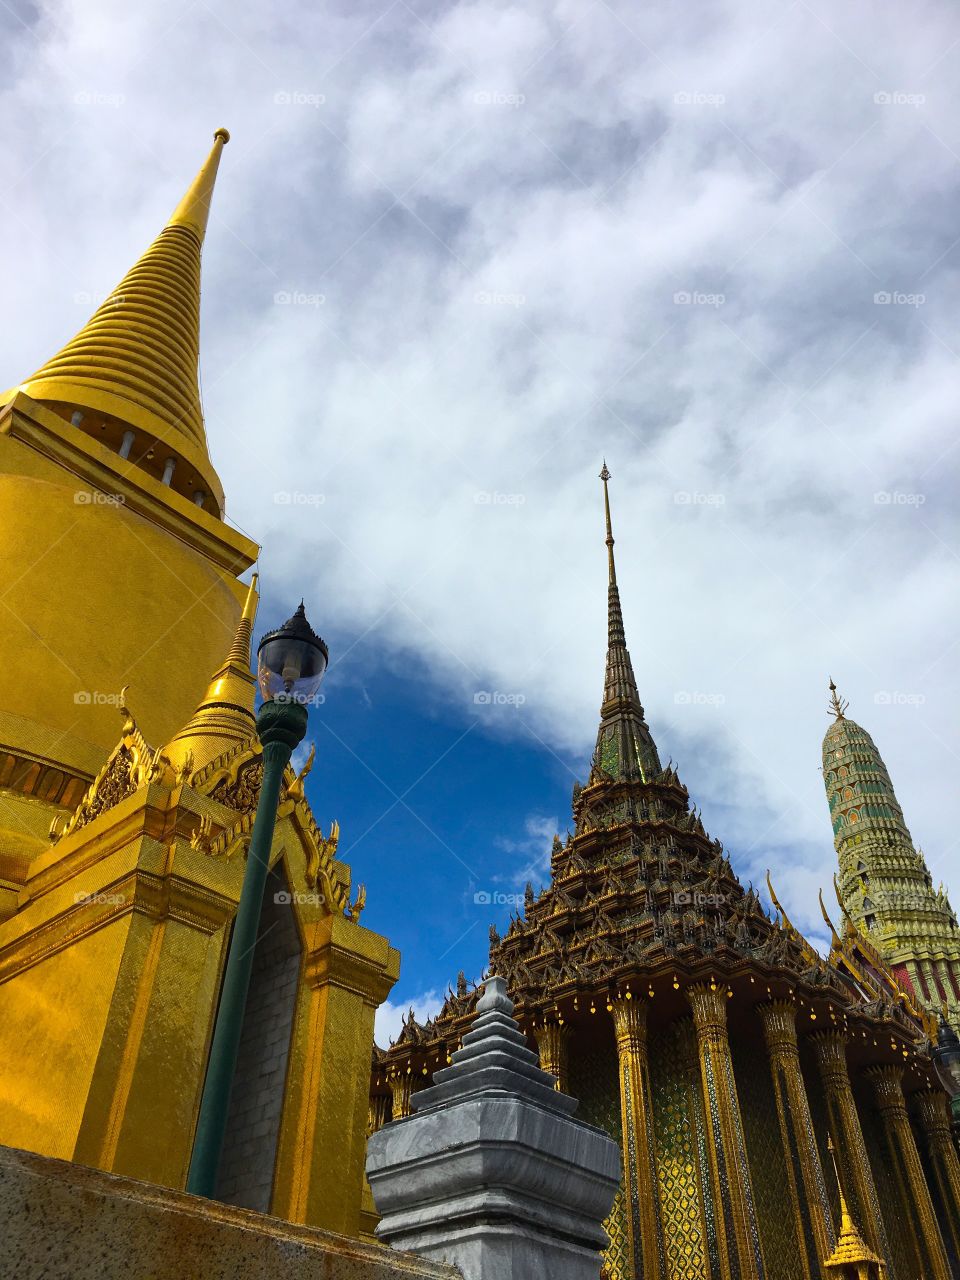 Grand Palace / Bangkok Thailand 11